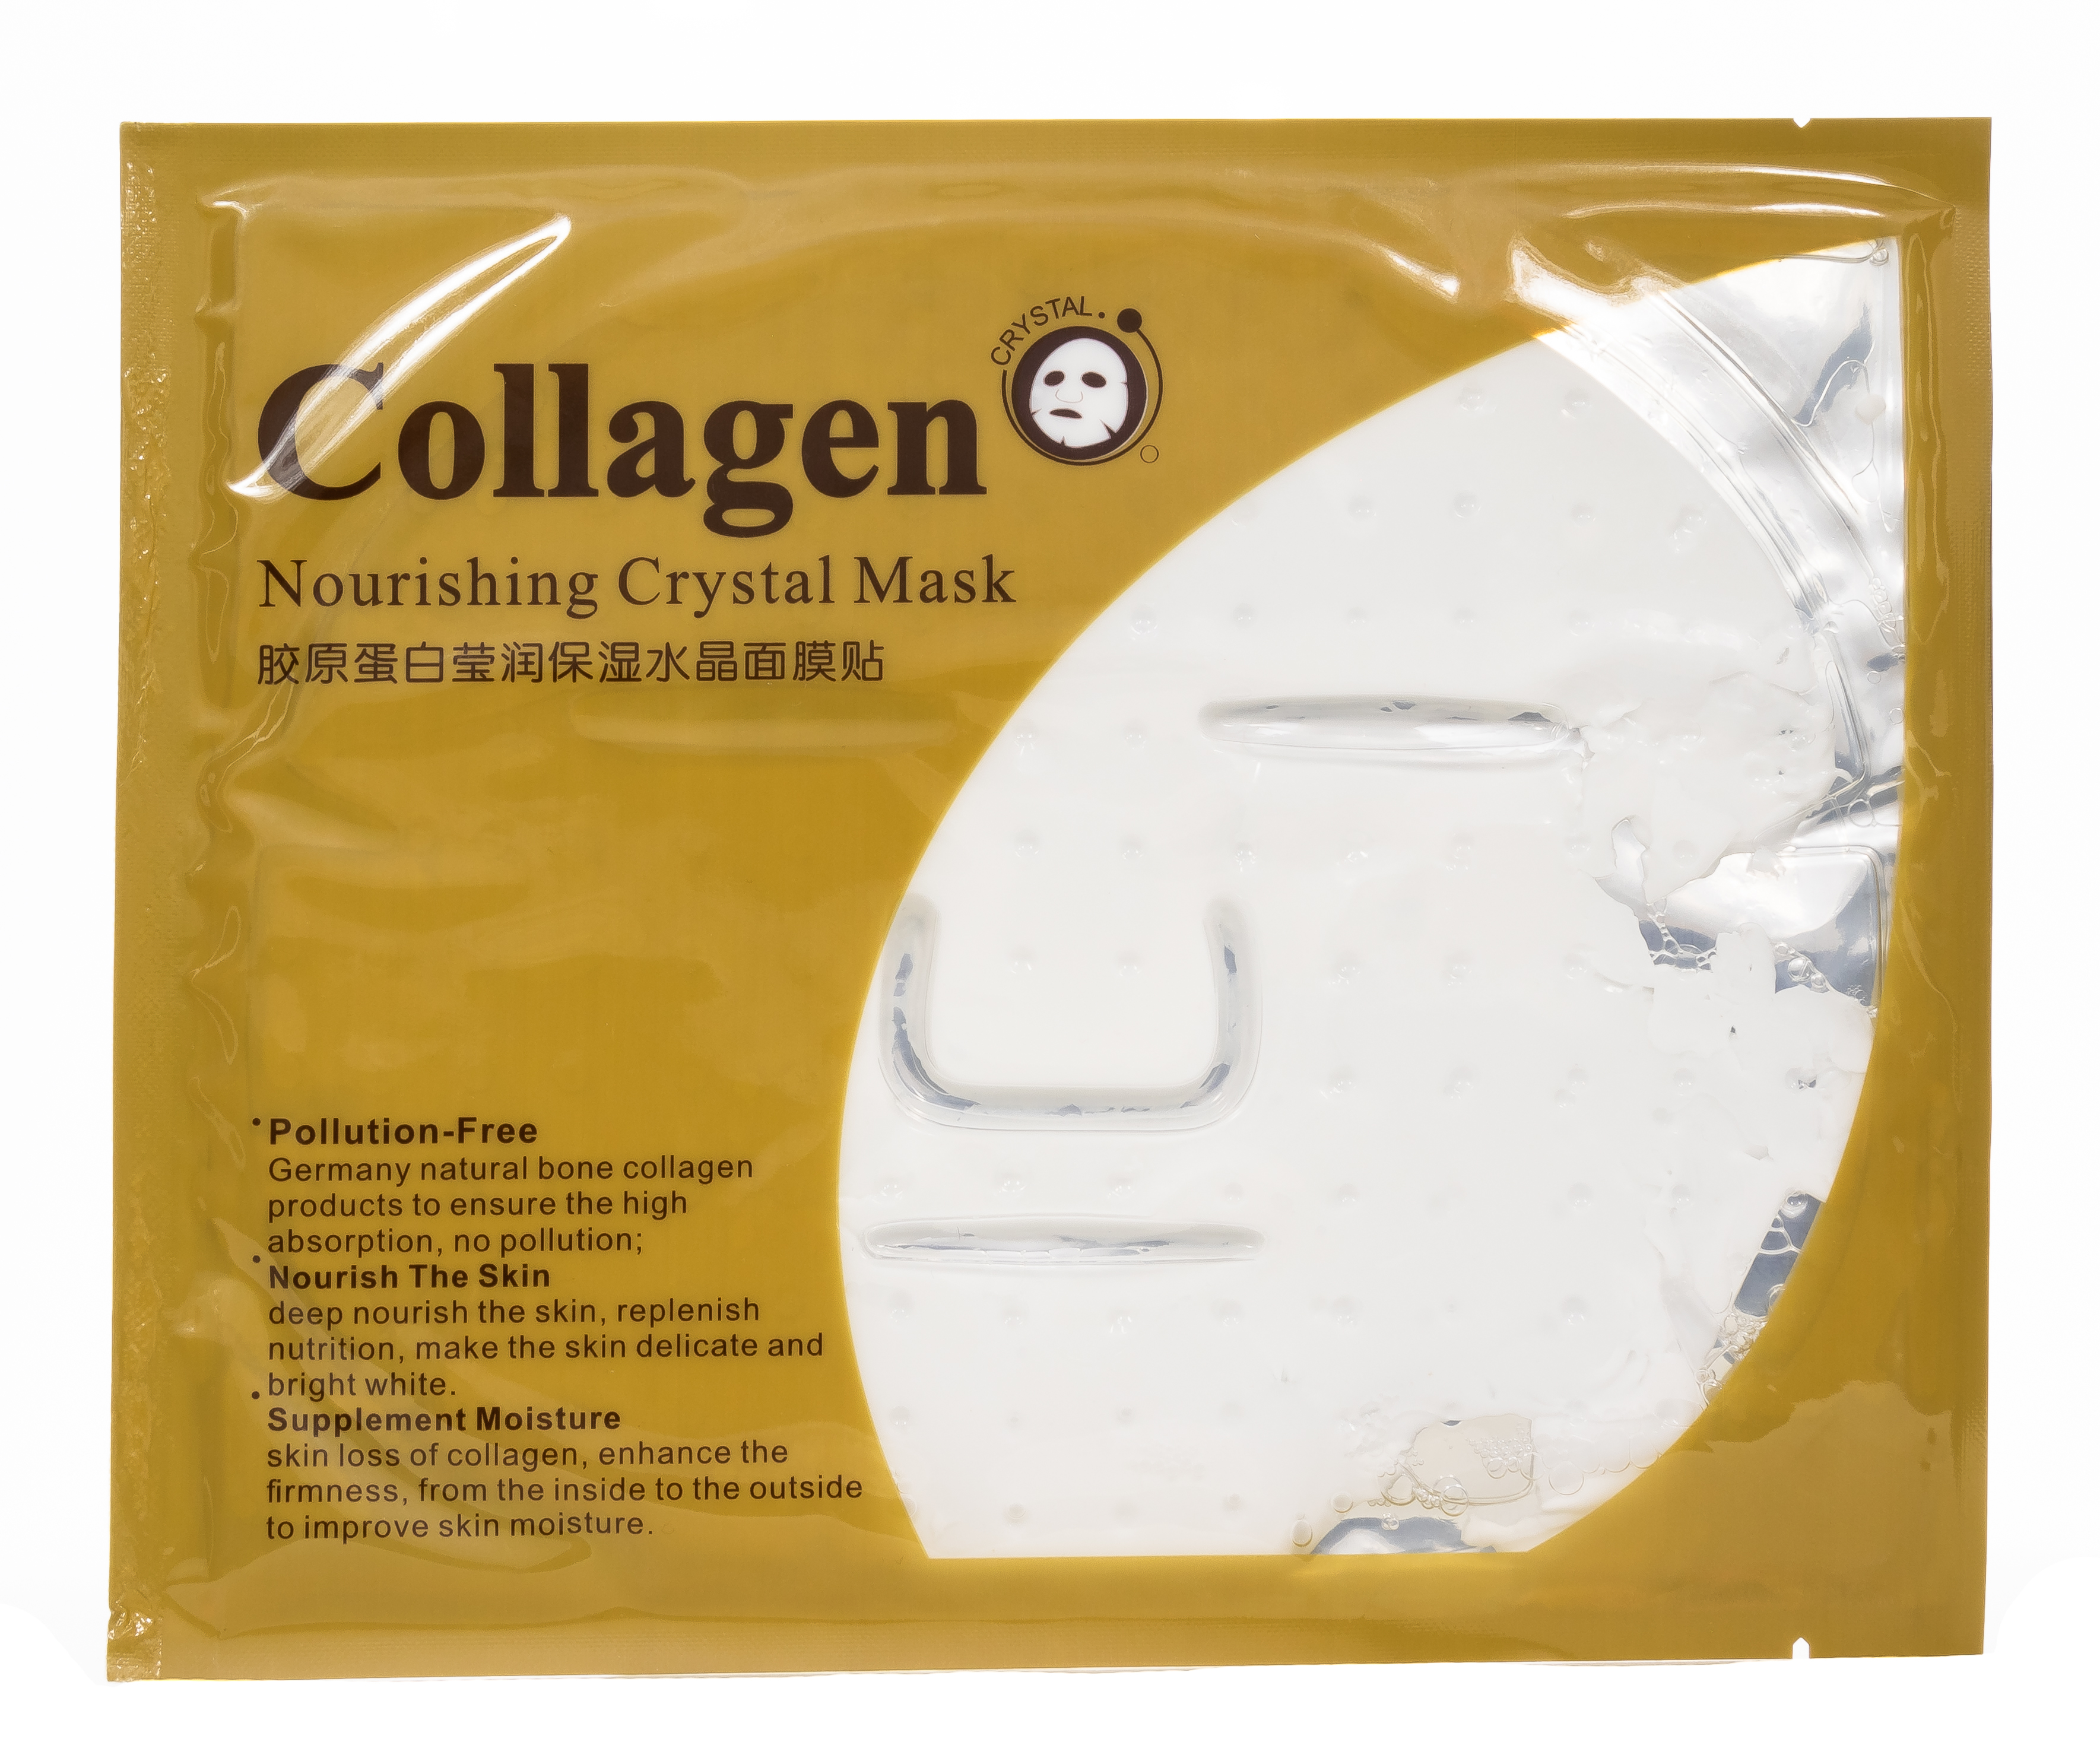 Коллагеновая маска отзывы. BIOAQUA. Маска для лица Collagen Nourishing Crystal Mask, 60 гр. BIOAQUA маска-салфетка гидрогелевая с коллагеном, 28г. Маска гидрогелевая с коллагеном 60 гр BIOAQUA. Гидрогелевая маска для лица Collagen Crystal Collagen.